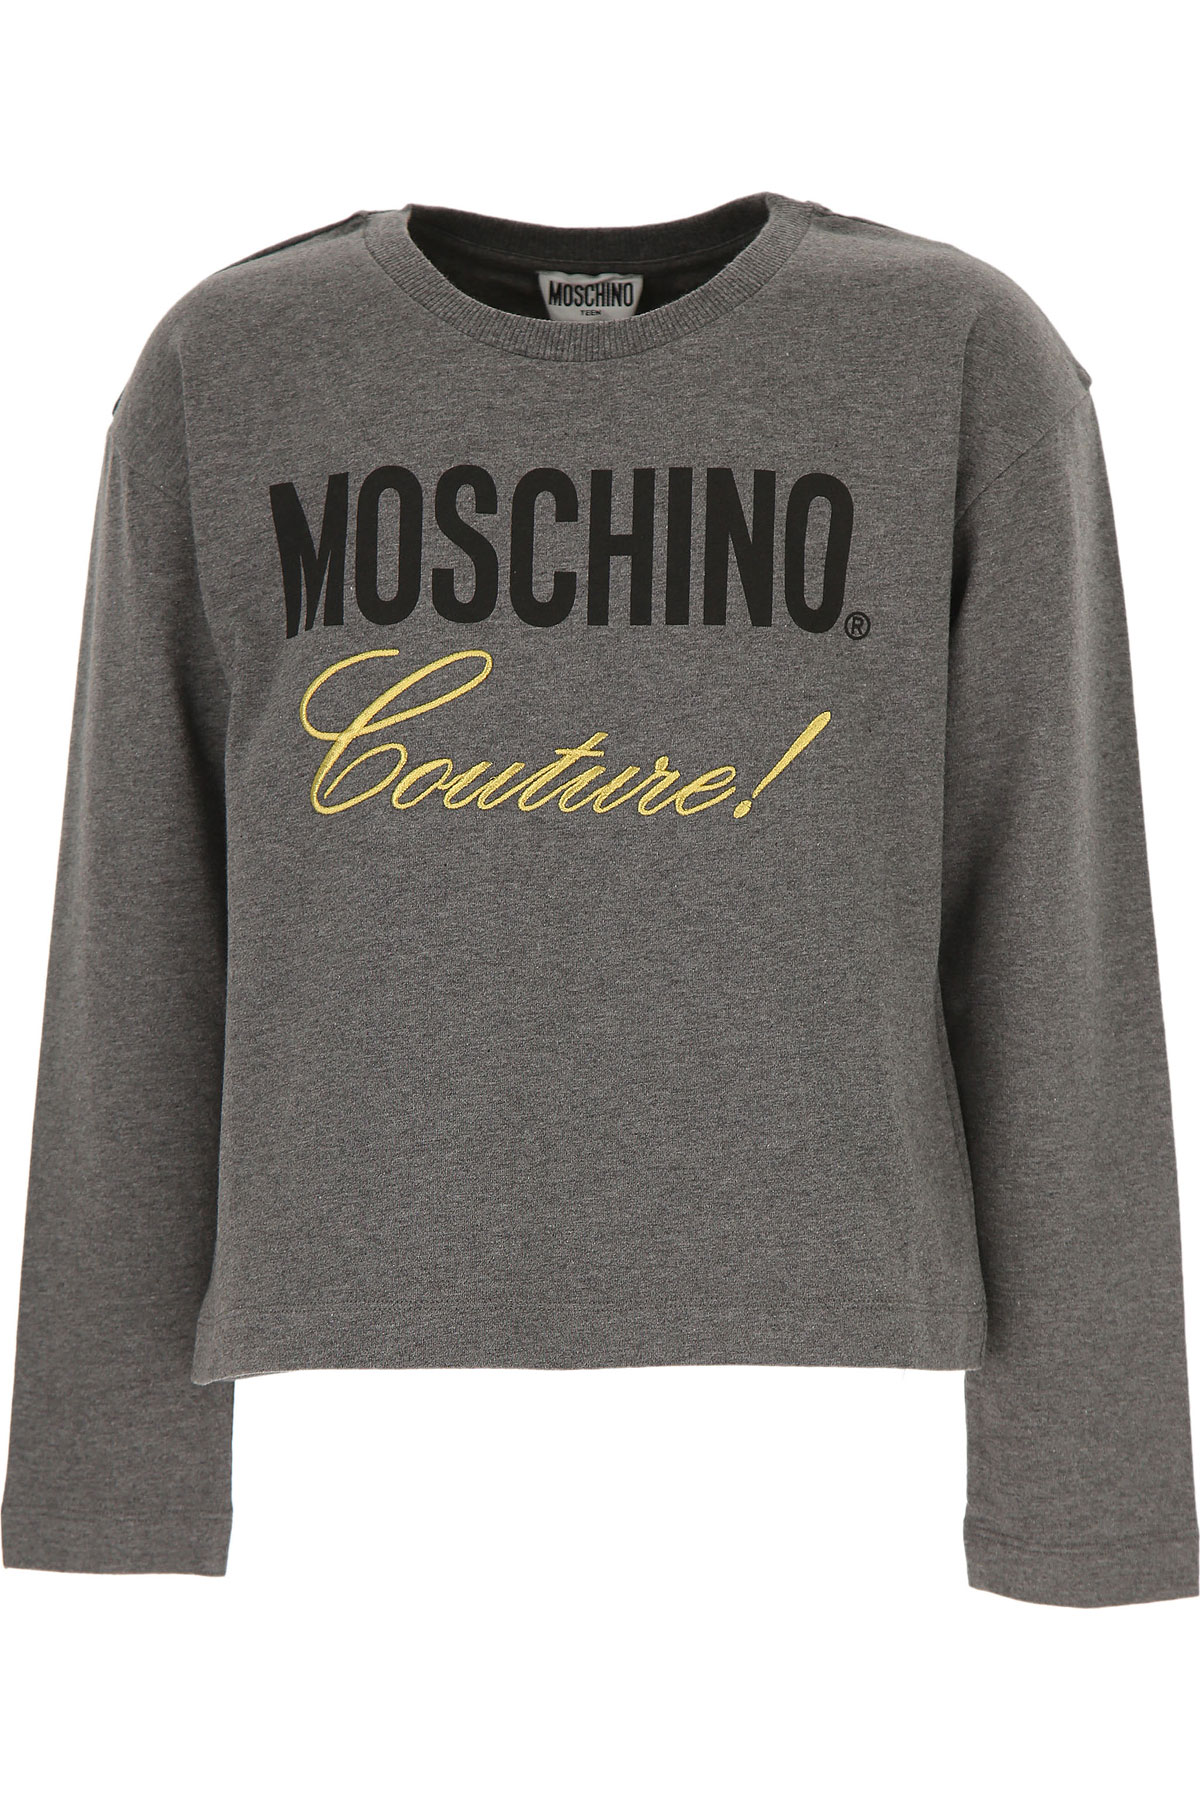 Moschino Kinder T-Shirt für Mädchen Günstig im Sale, Dunkelgrau, Baumwolle, 2017, 10Y 12Y 14Y 8Y